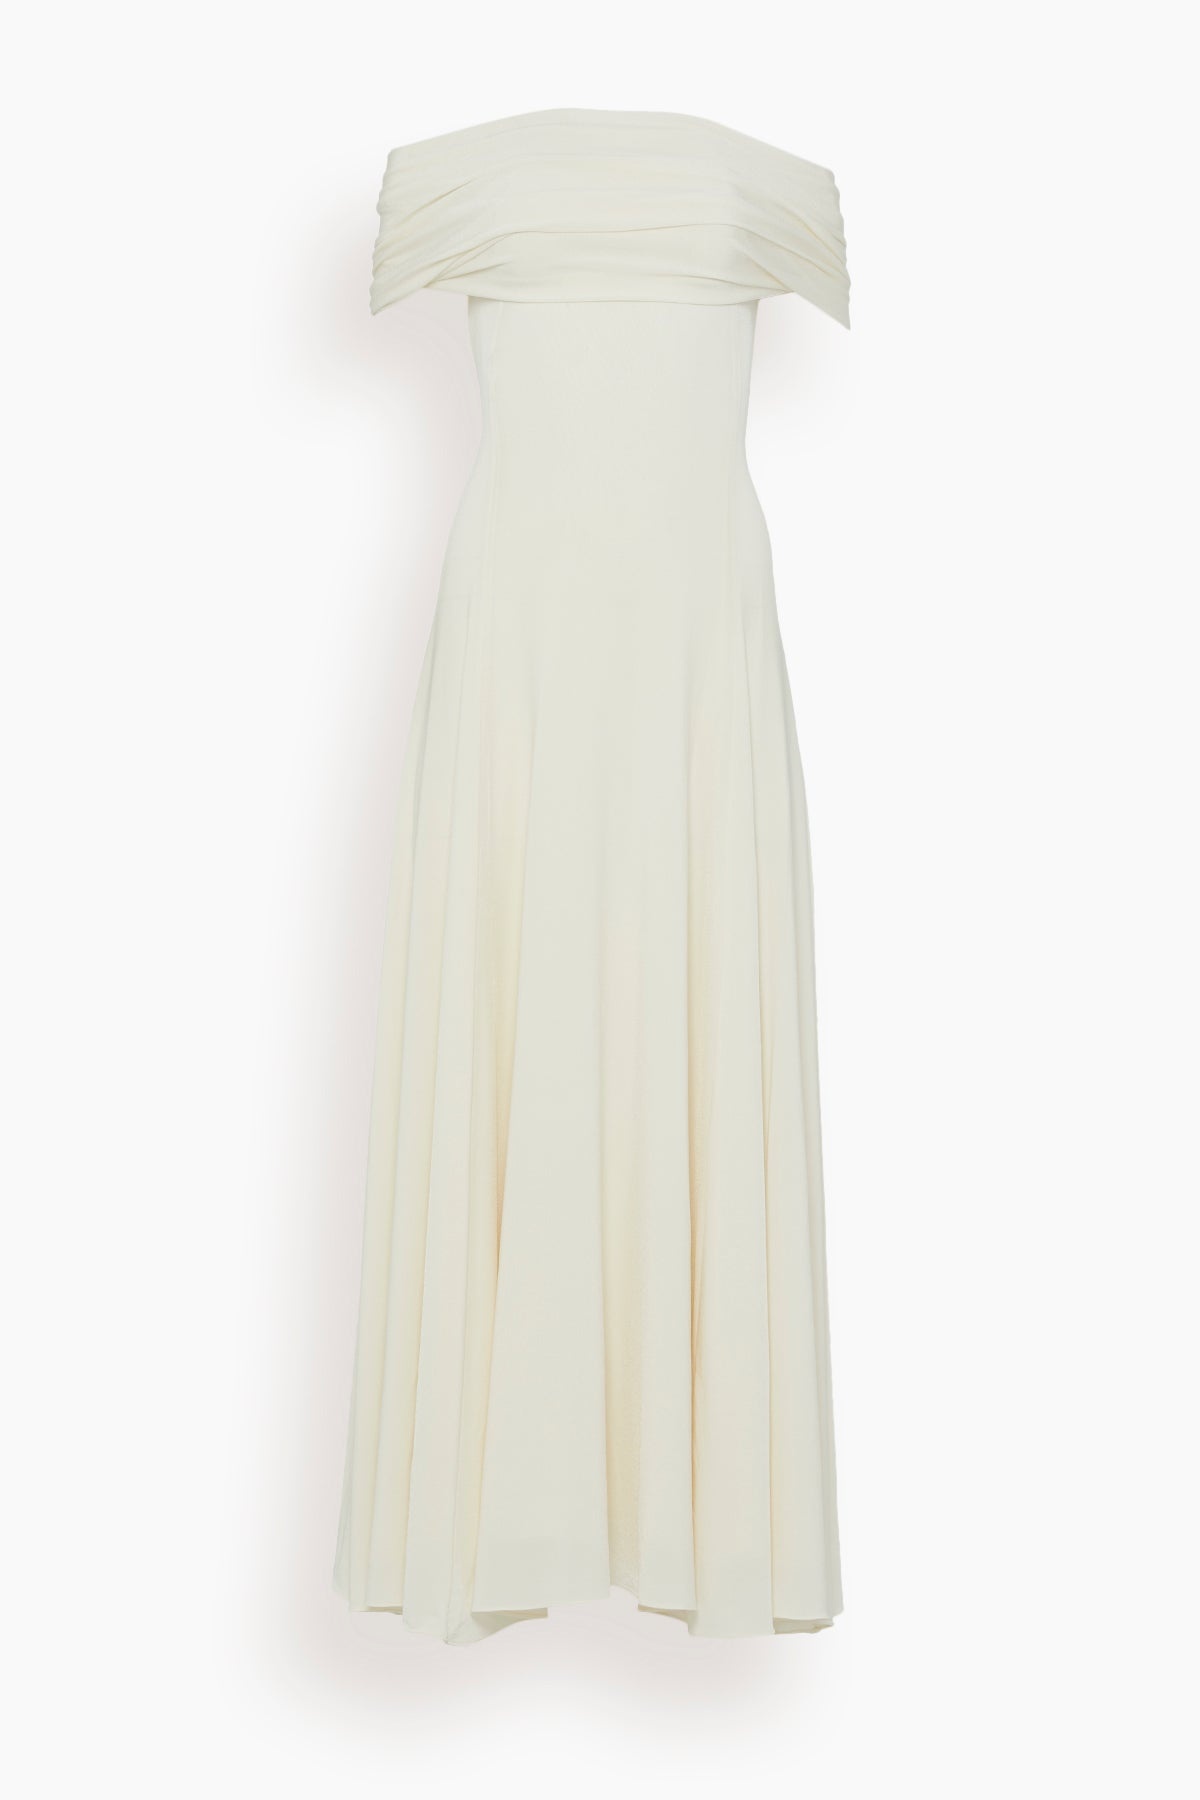 Bridgit Dress in Cream - 1